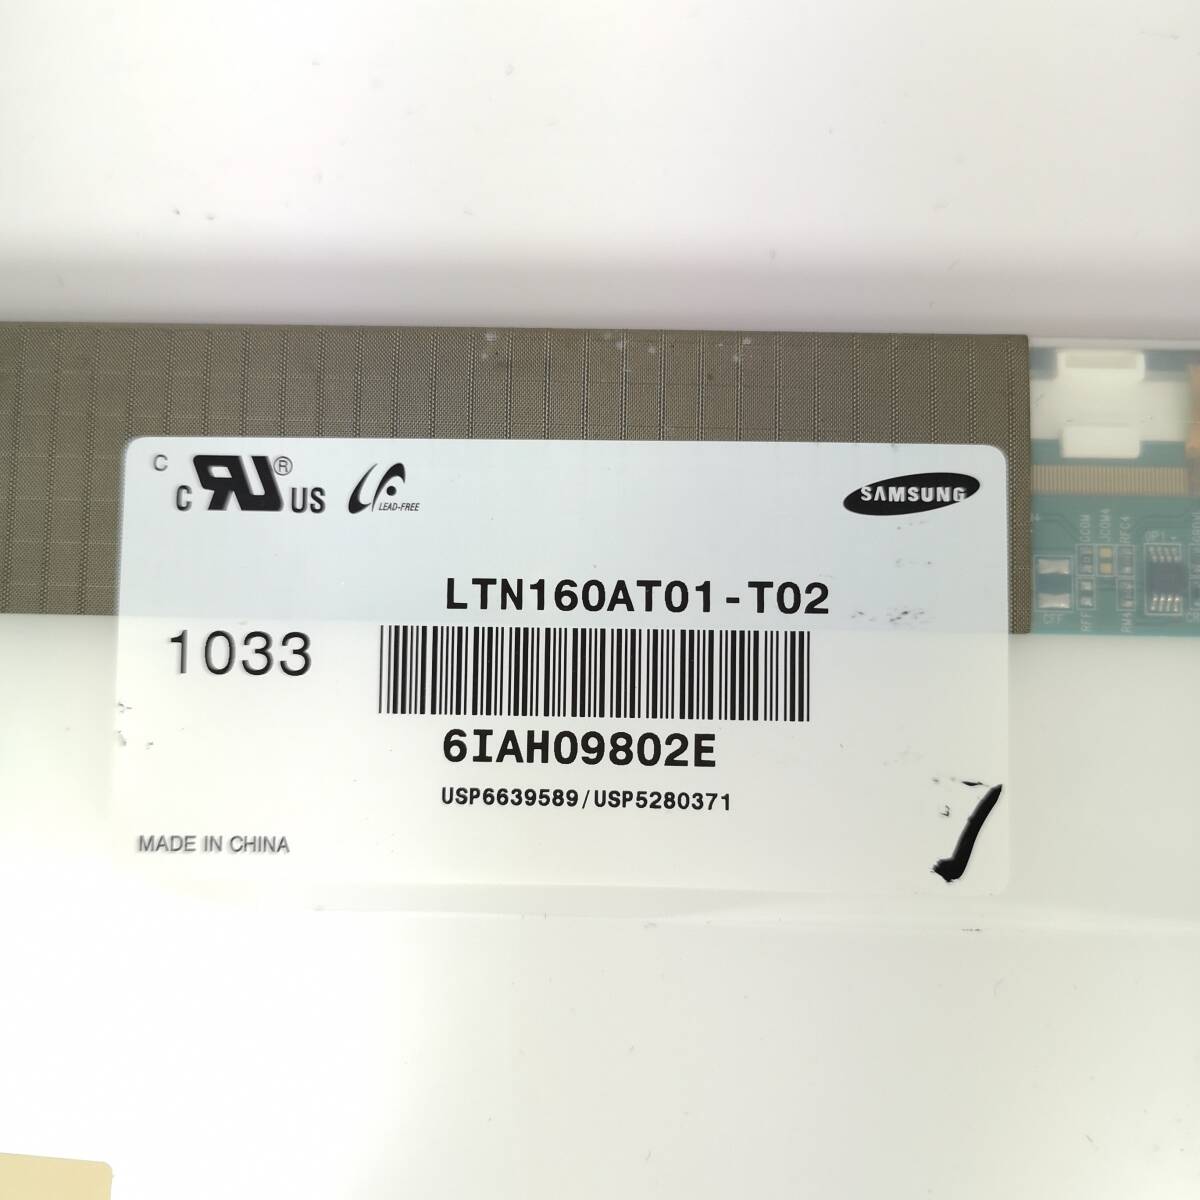 ジャンク 液晶パネル Samsung LTN160AT01-T02 動作確認済みJ00001 PCパーツ モニター ディスプレイ 液晶パネル 修理部品 sbPU_画像3